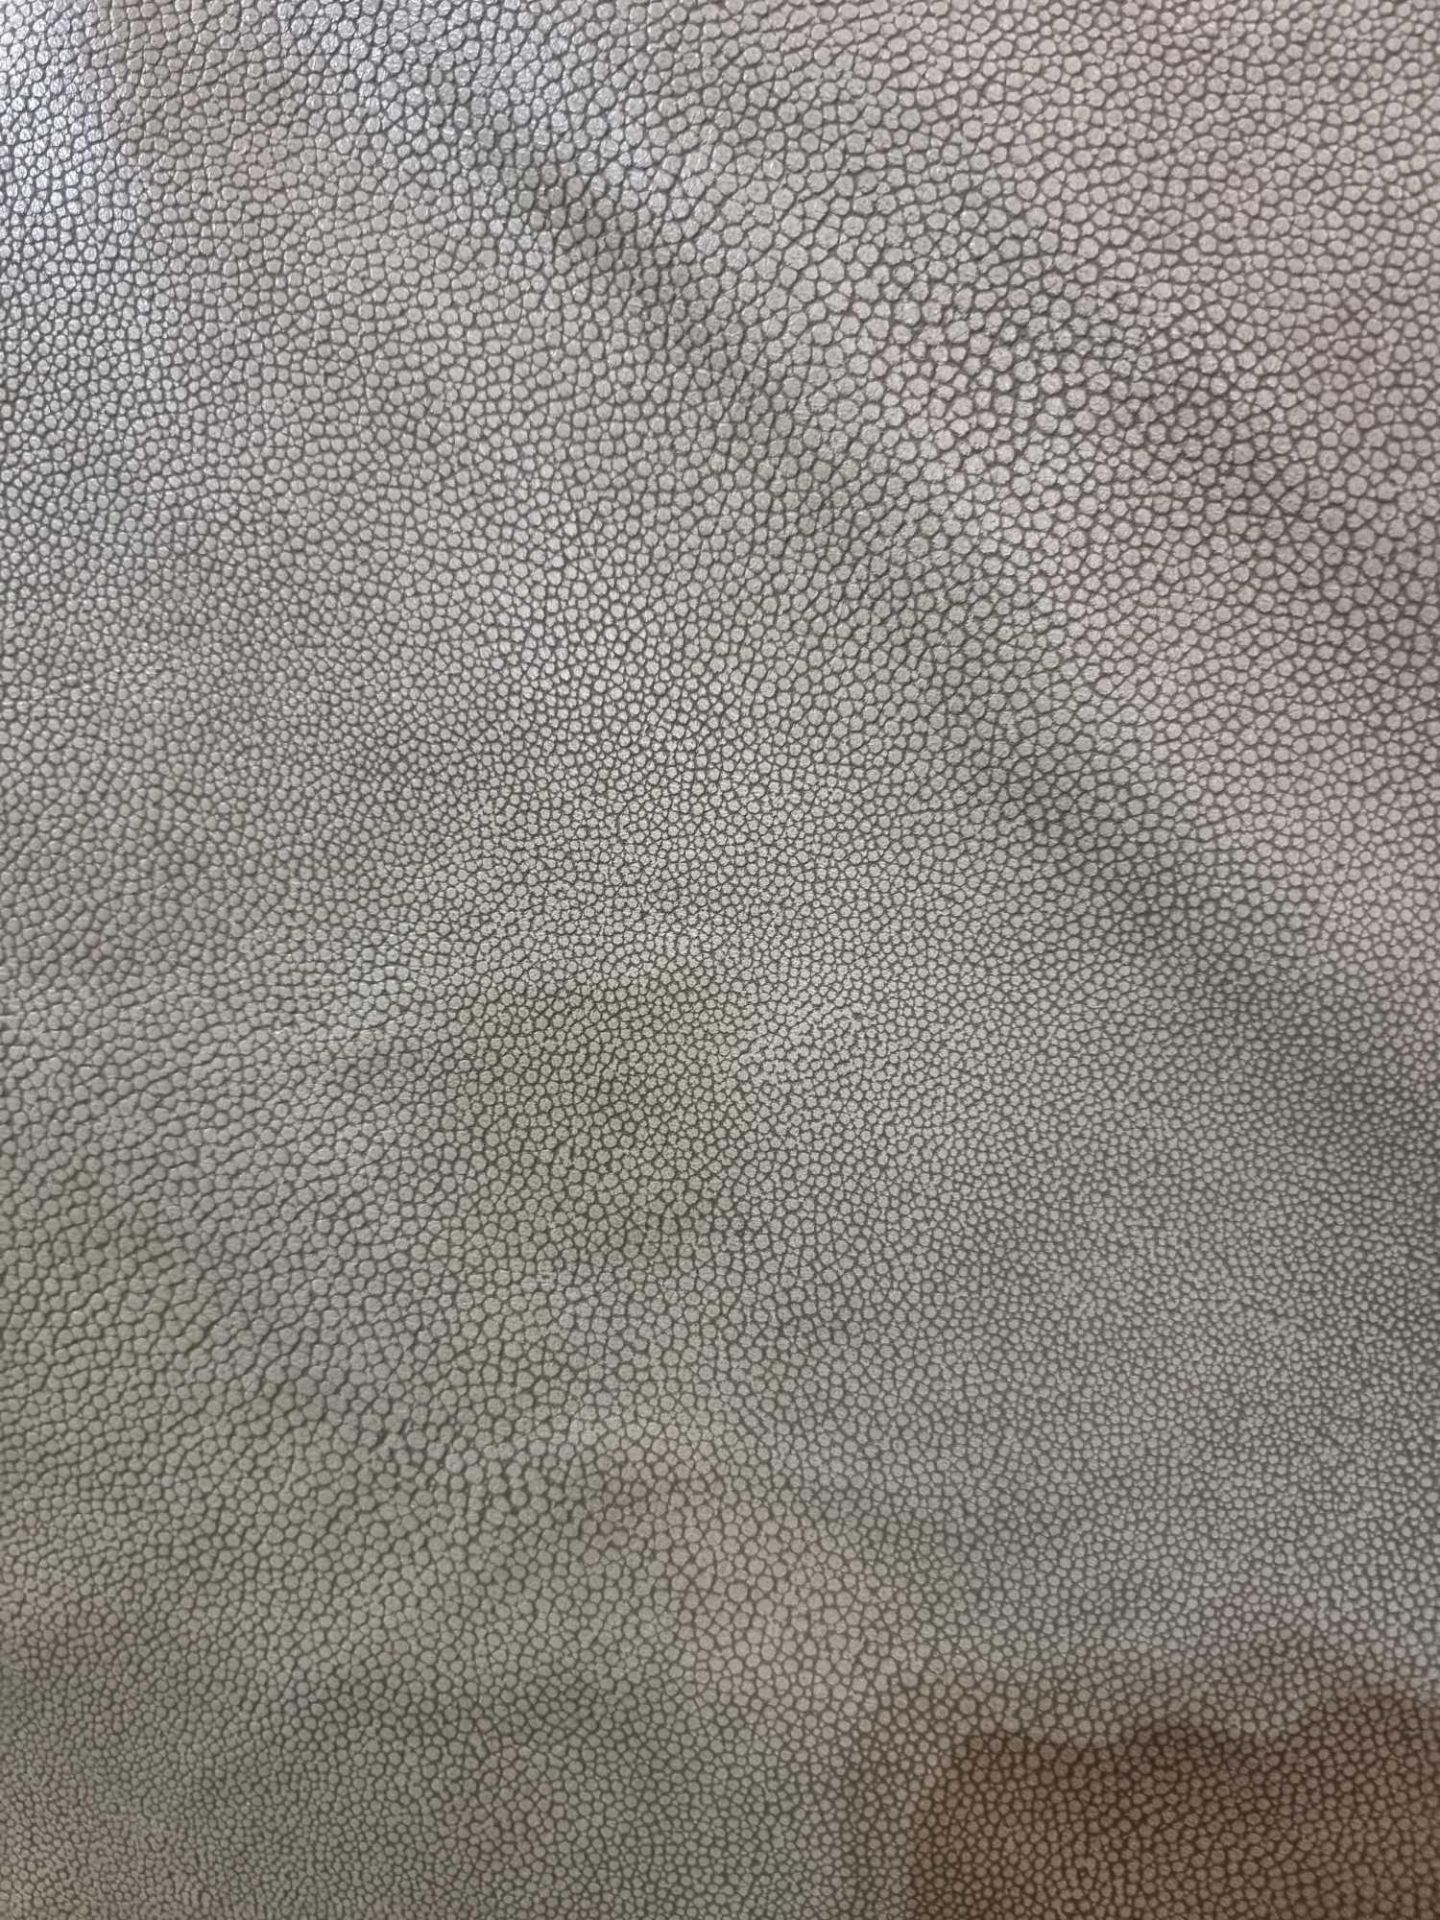 Sage Leather Hide approximately 4 62M2 2 2 x 2 1cm ( Hide No,188) - Bild 4 aus 5